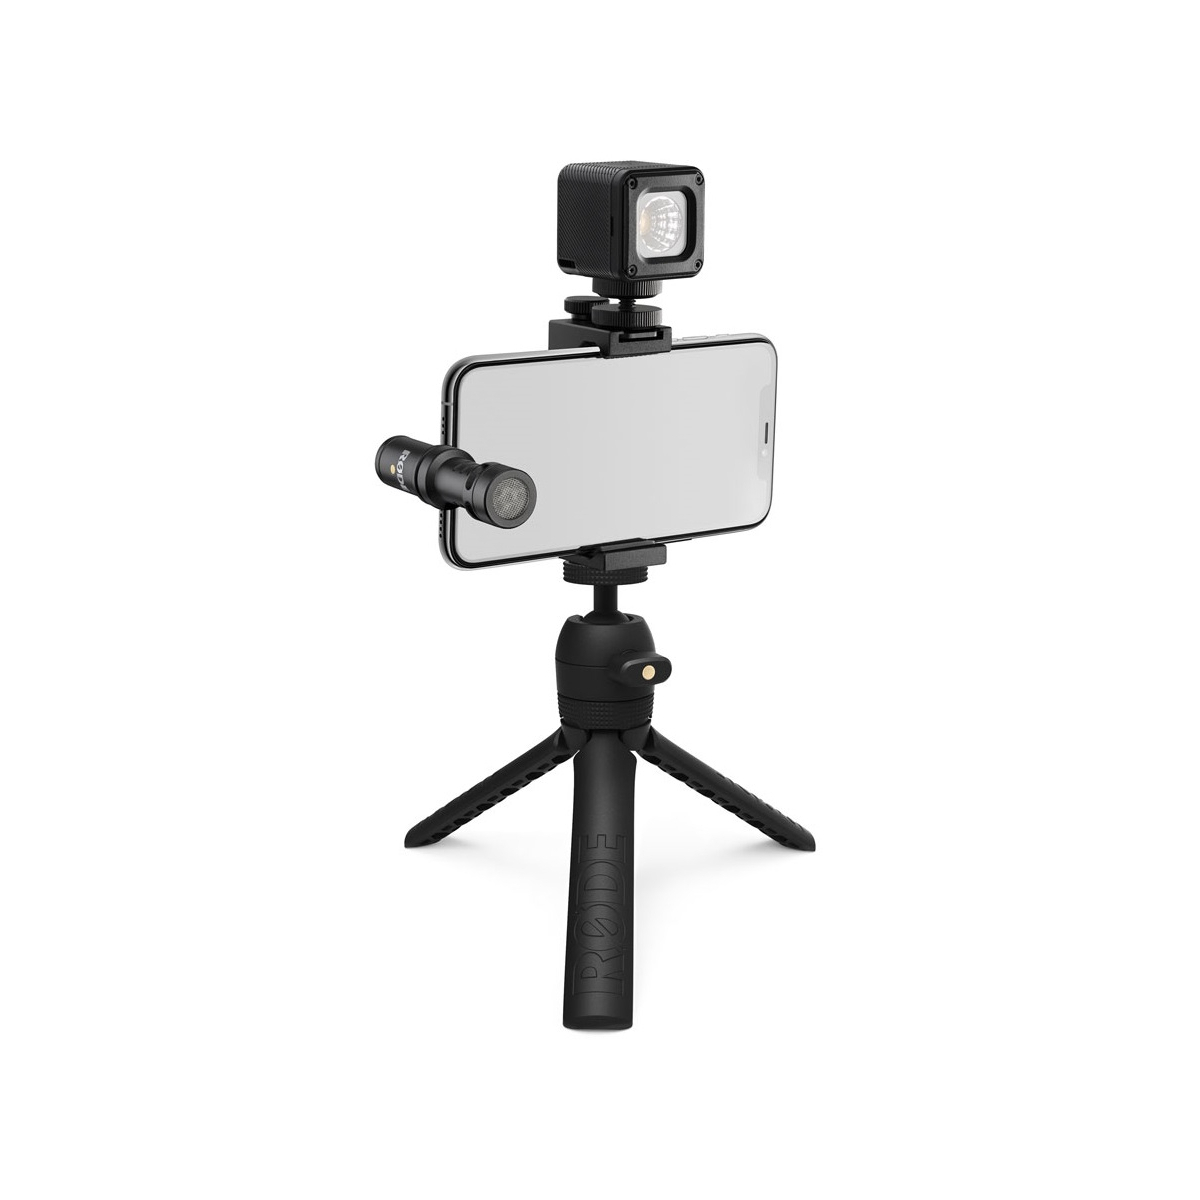 Micros caméras - Rode - VLOGGER KIT IOS EDITION